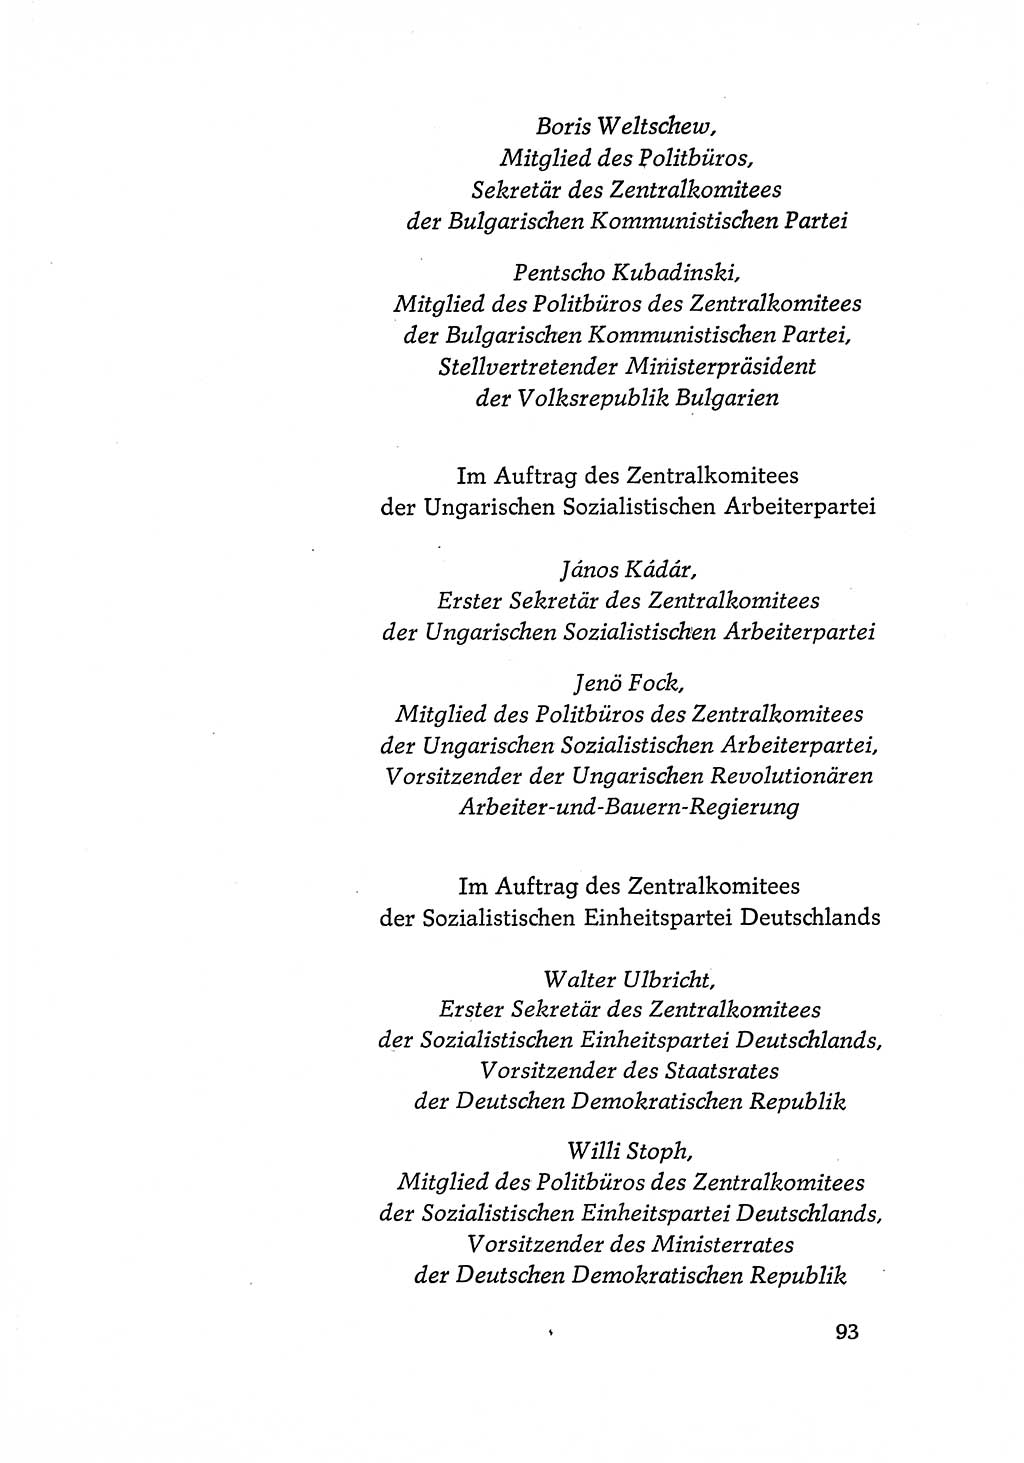 Dokumente der Sozialistischen Einheitspartei Deutschlands (SED) [Deutsche Demokratische Republik (DDR)] 1968-1969, Seite 93 (Dok. SED DDR 1968-1969, S. 93)